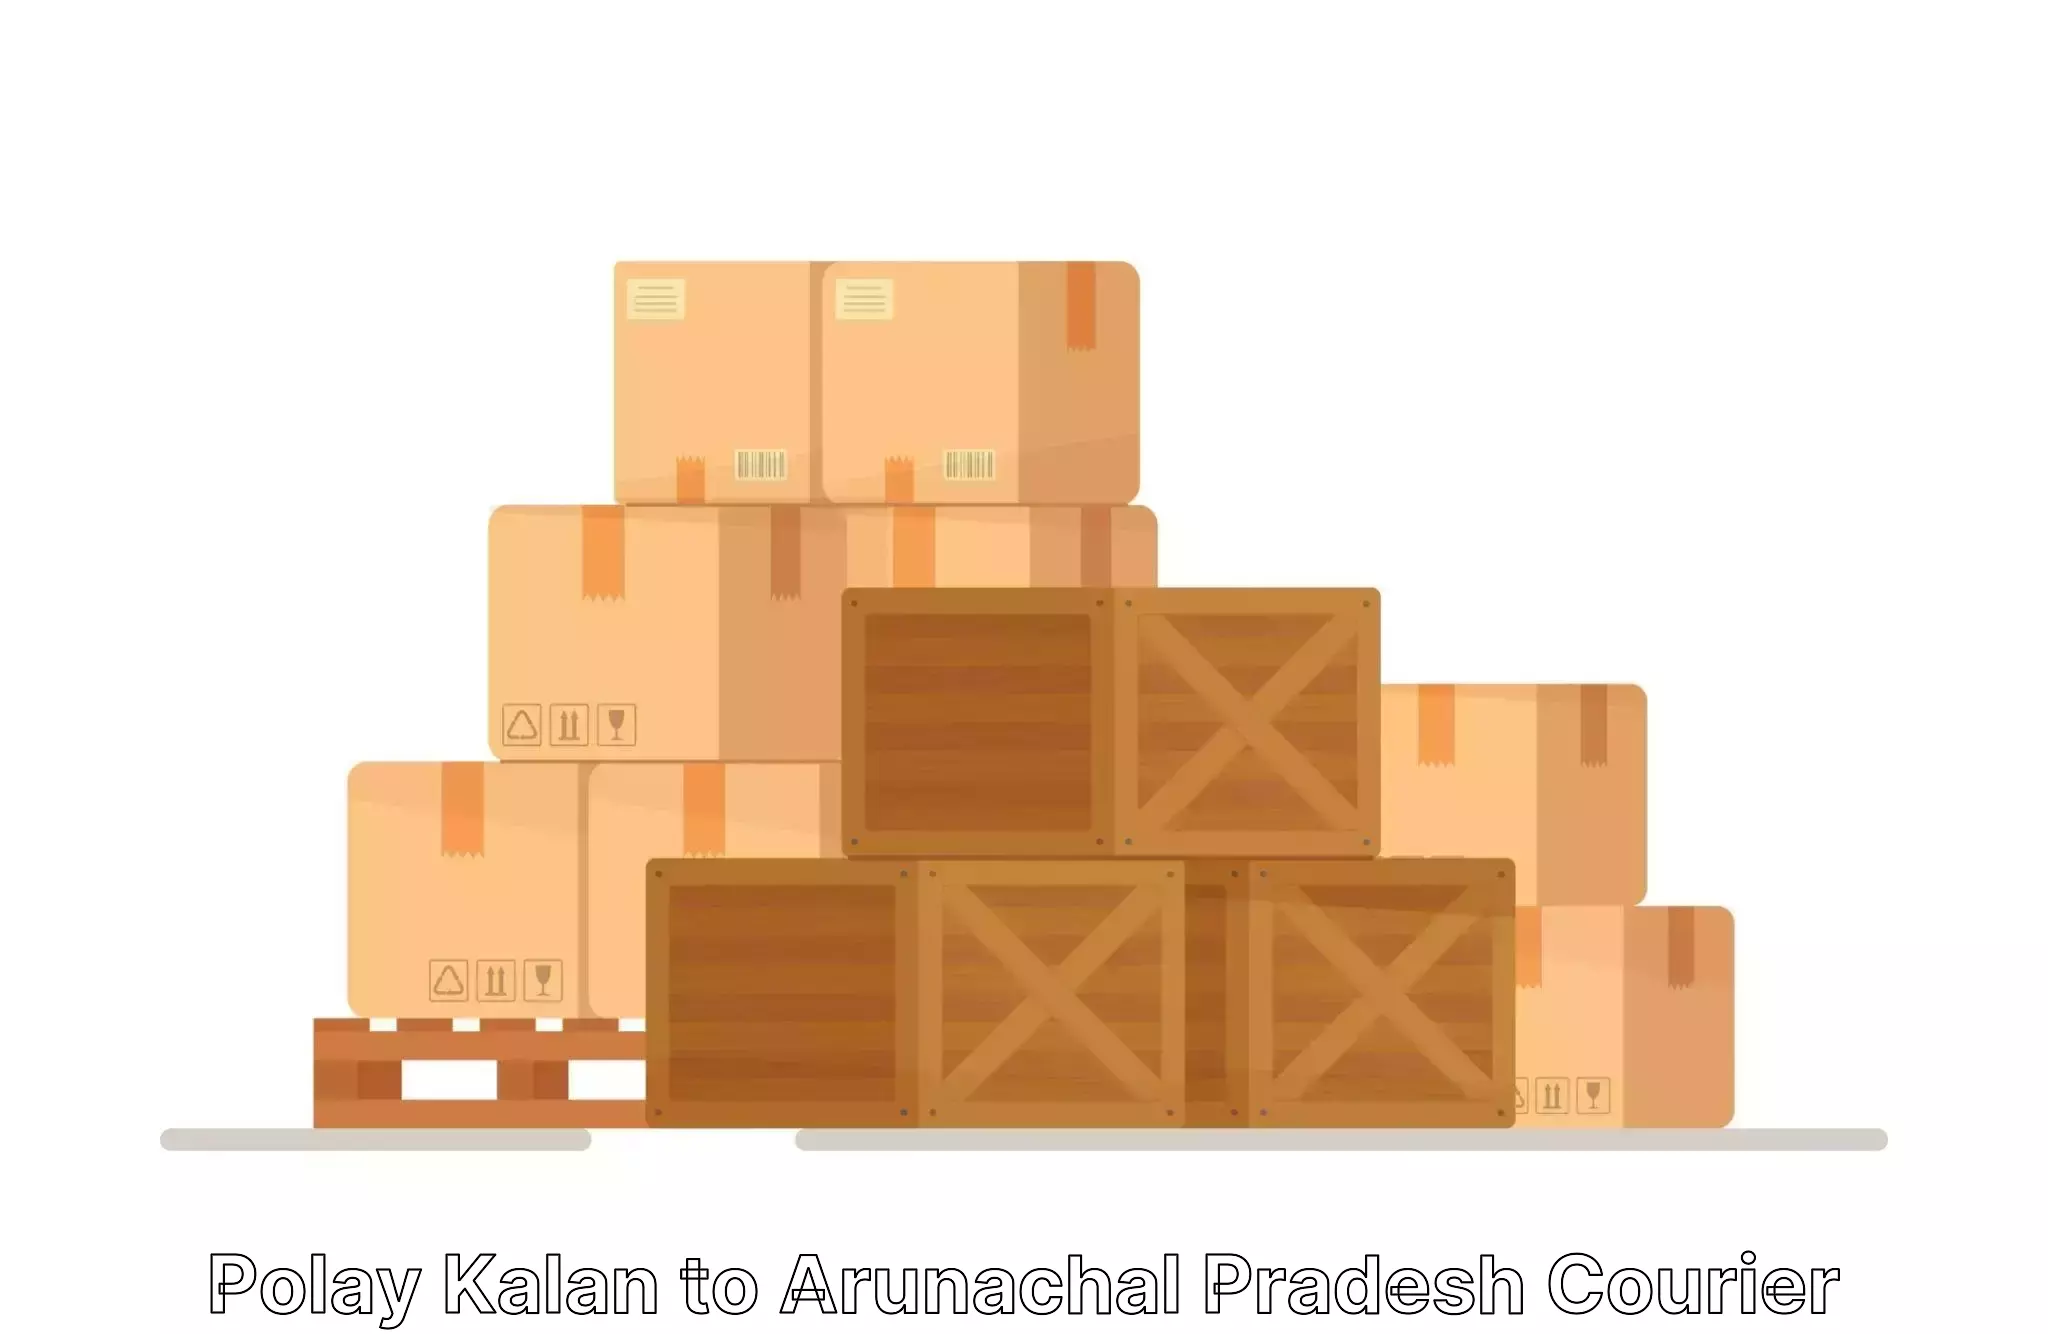 Professional furniture shifting Polay Kalan to Arunachal Pradesh